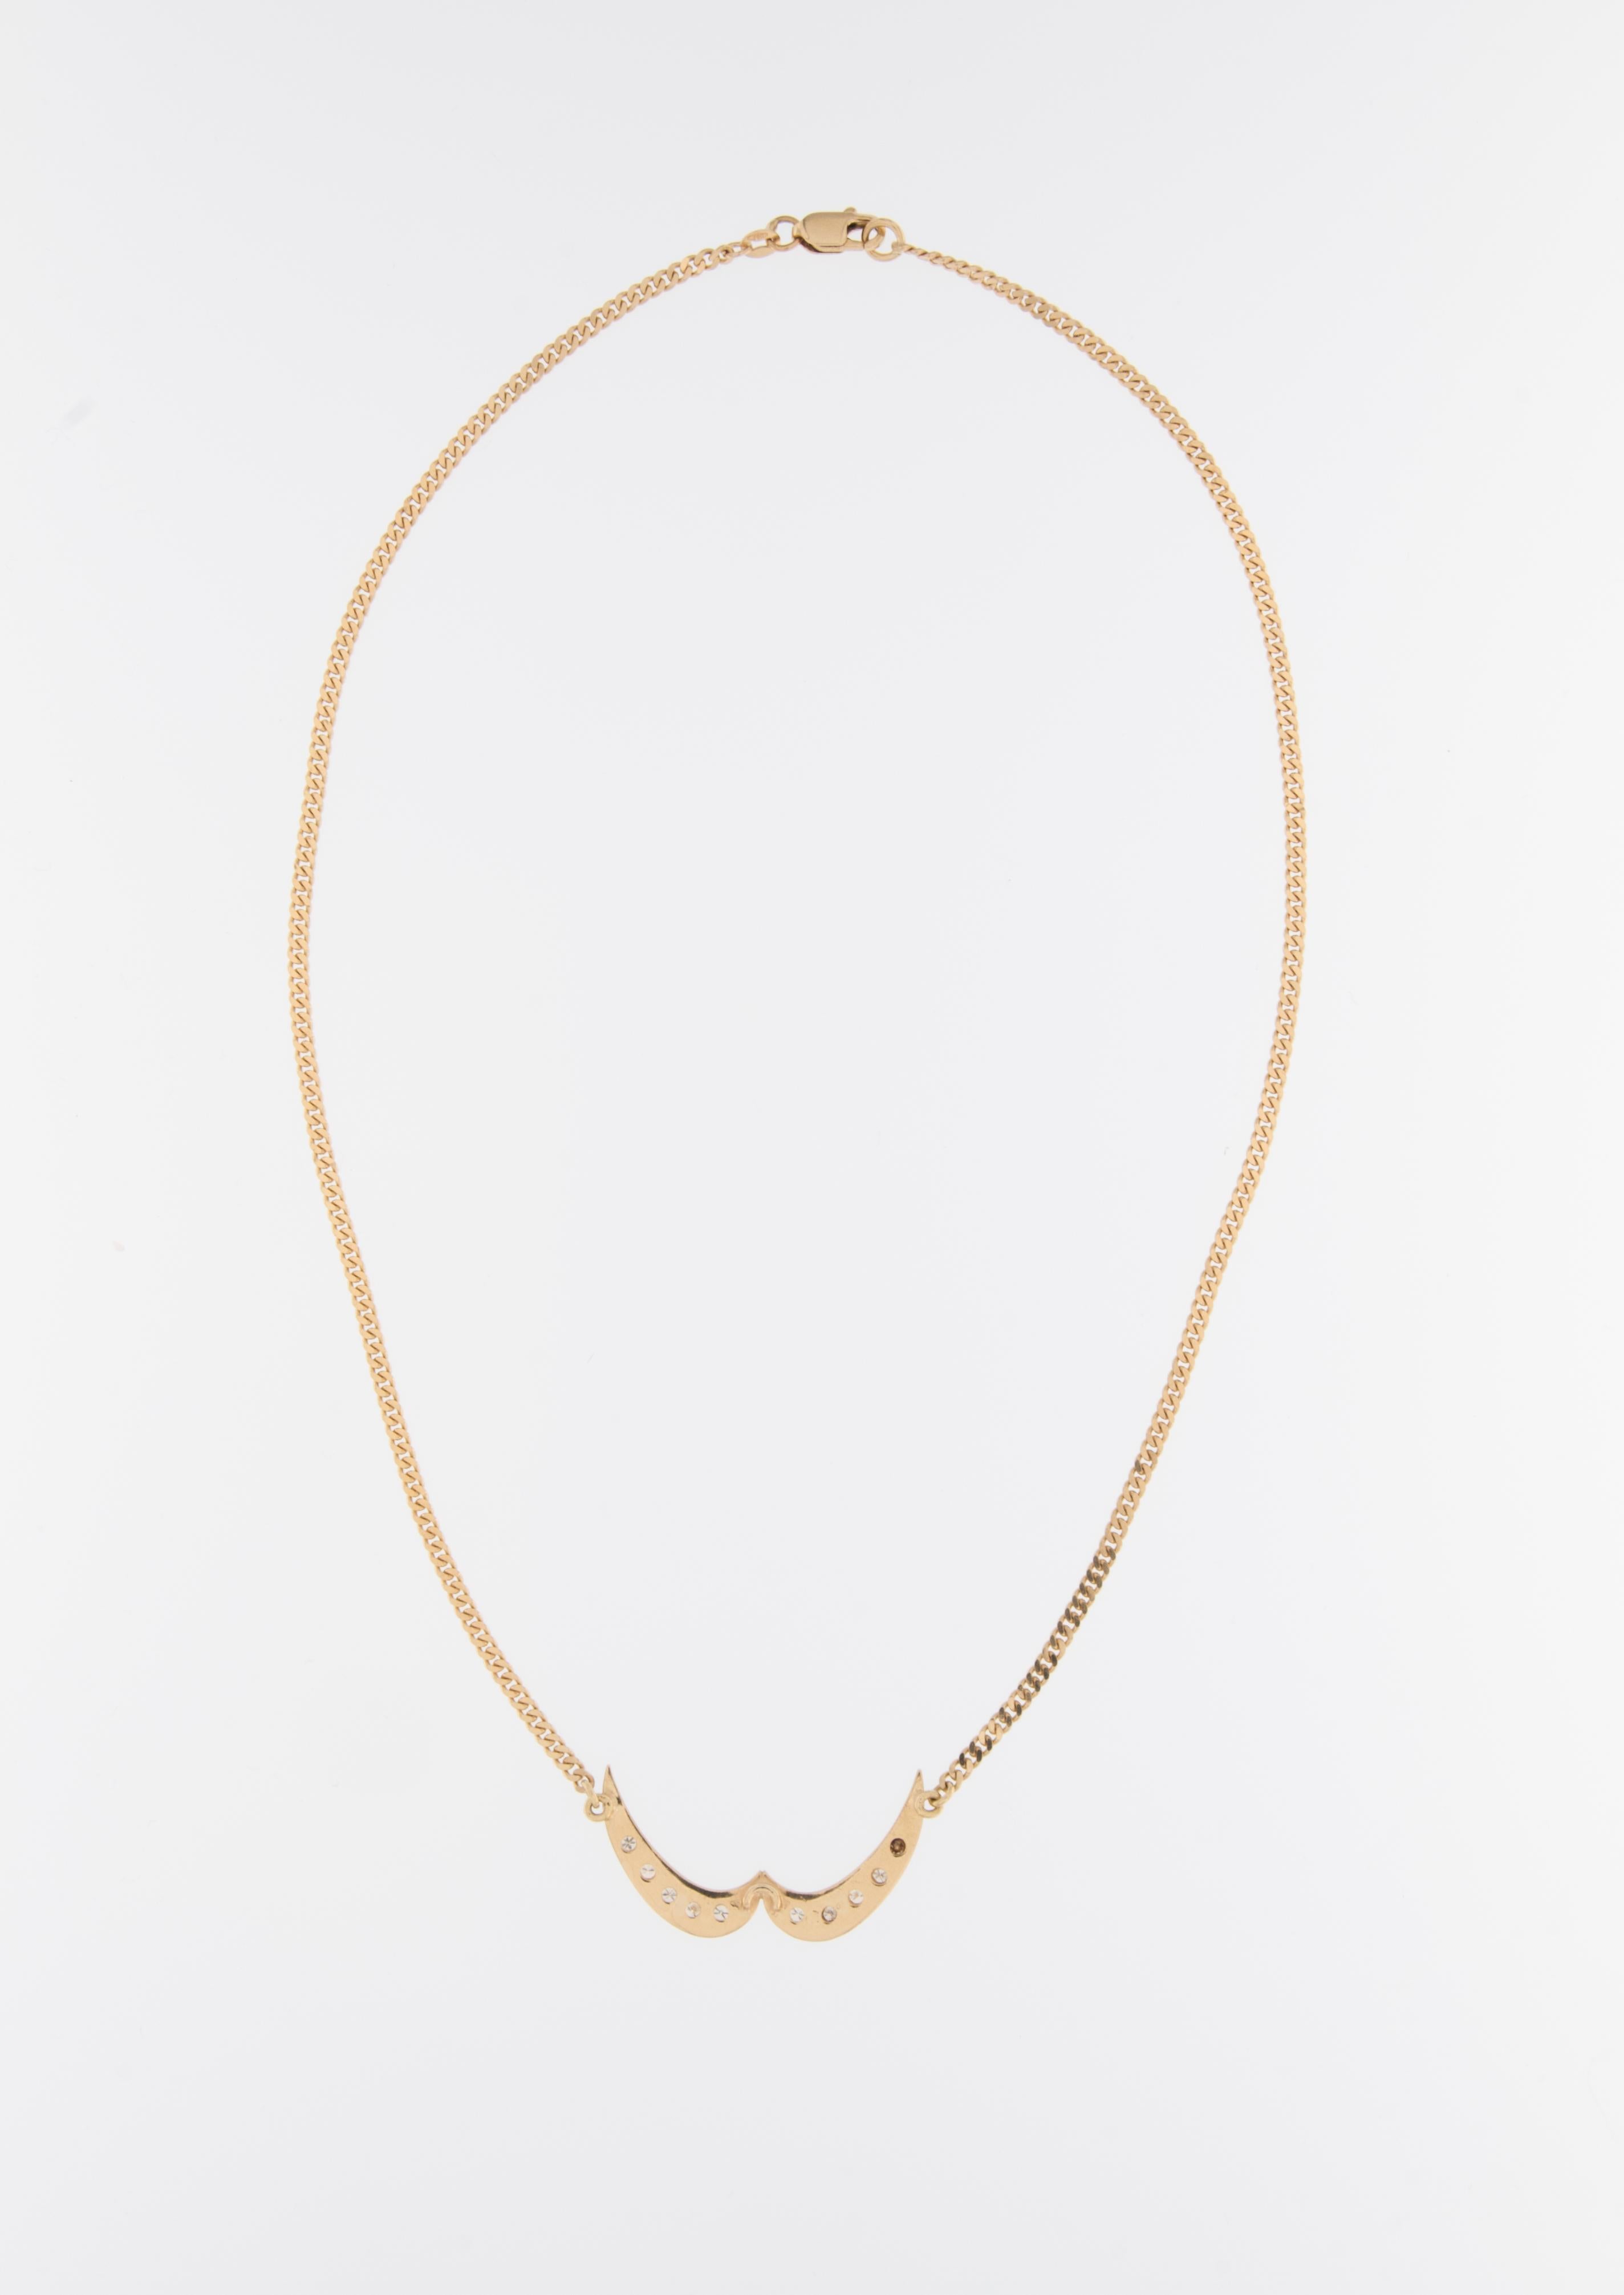 Le collier Vintage en forme de collier est un bijou exquis réalisé en or jaune 18kt et orné de diamants. 

Le collier est en or jaune 18 carats, connu pour sa beauté intemporelle et sa durabilité. Cet or de haute qualité confère à la pièce un ton